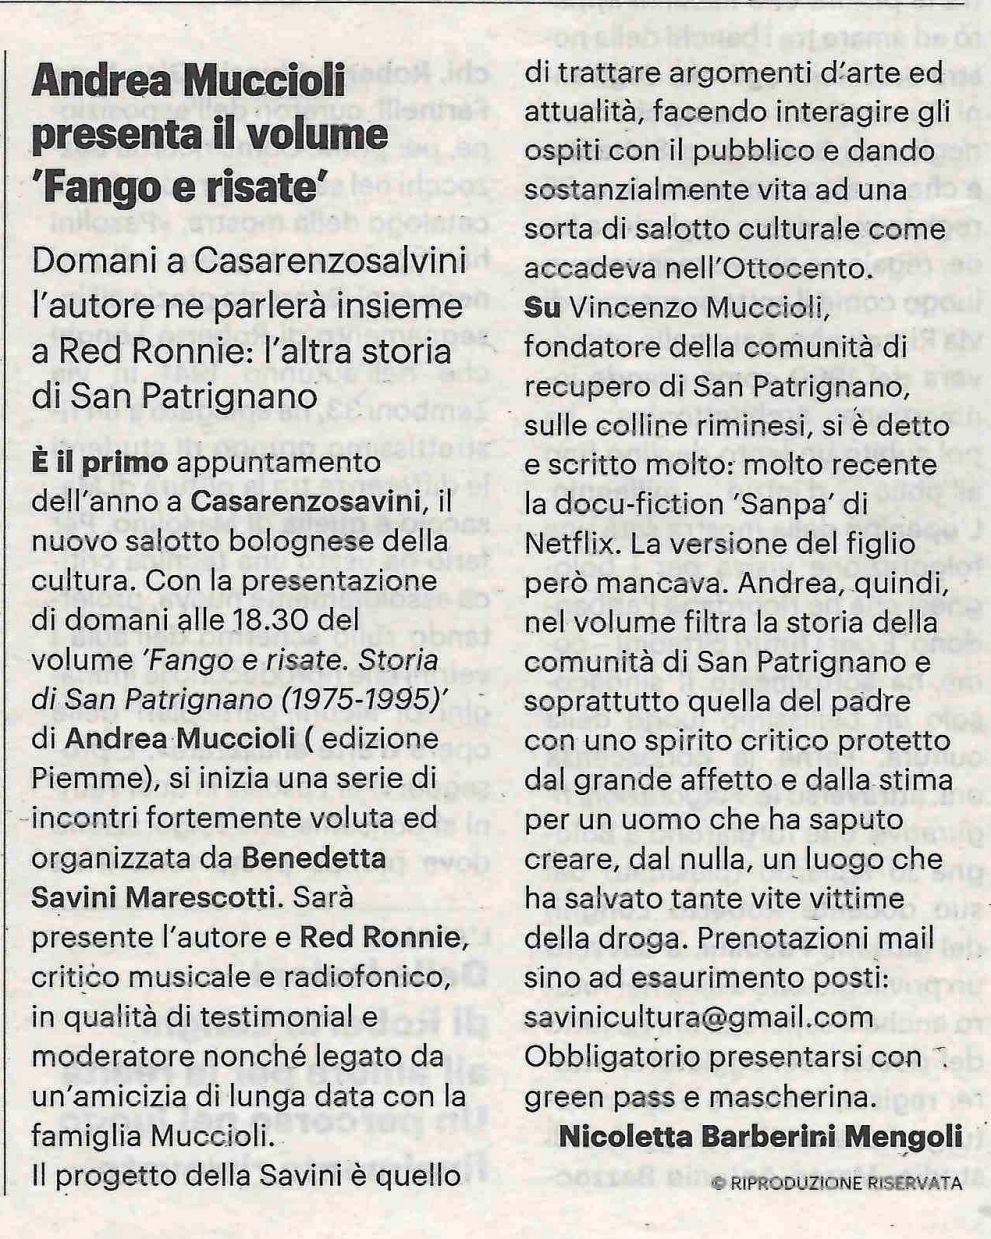 Andrea Muccioli presenta il volume: 'Fango e risate'